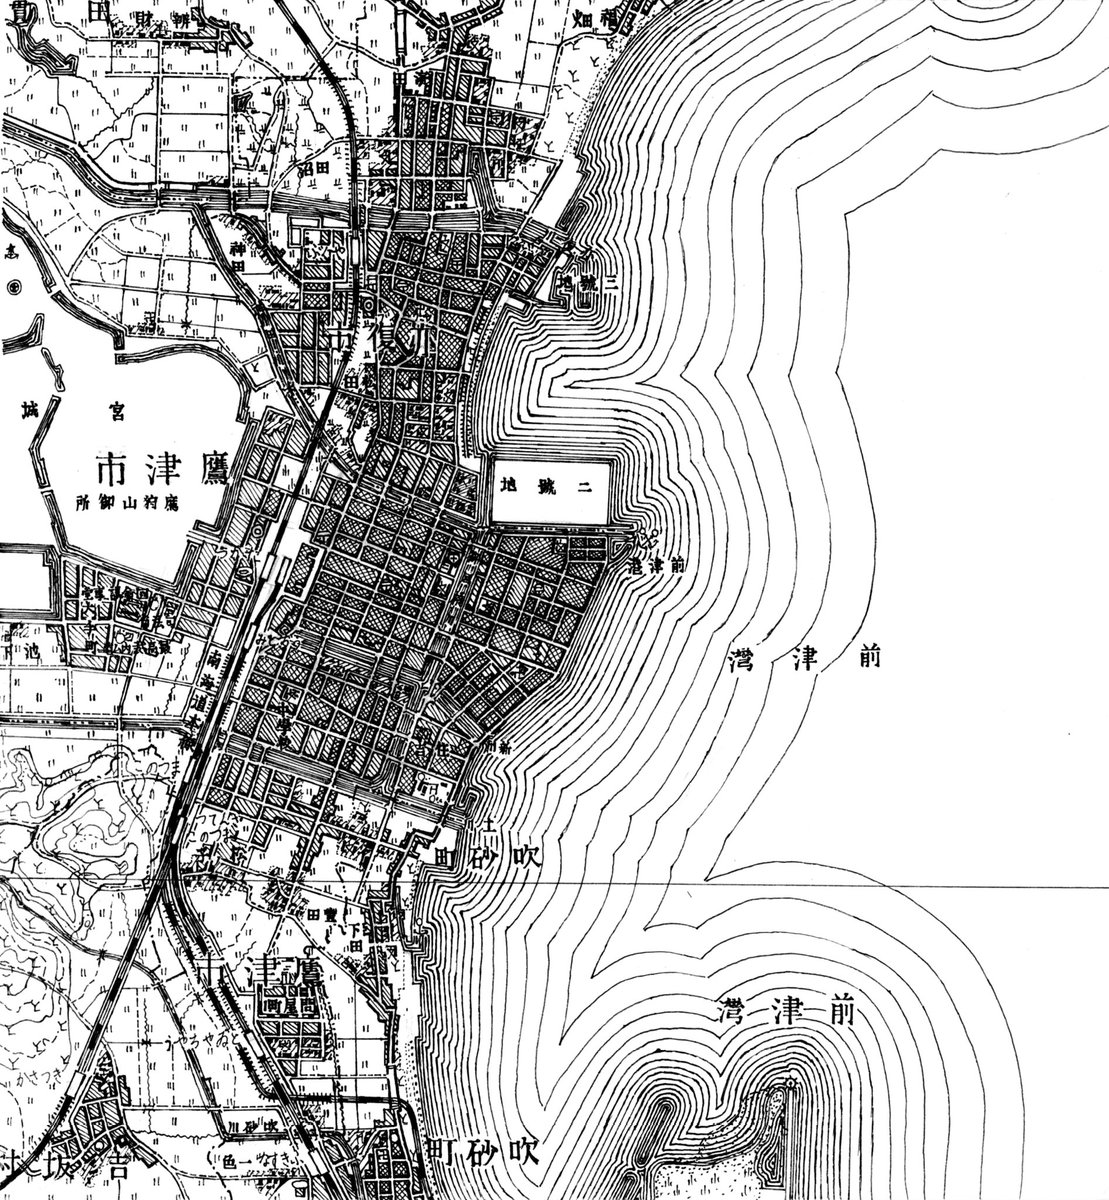 日本でいう明治後期、大正、昭和中期(戦時中)の、鷹津市内の5万分1地形図。街が広がっていく様子をご覧いただきたい。
(全部普通のボールペンで描いてるので、誰でも作れます。みなさんもぜひ作ってみて)
#空想地図 #架空地図 #鷹津市 